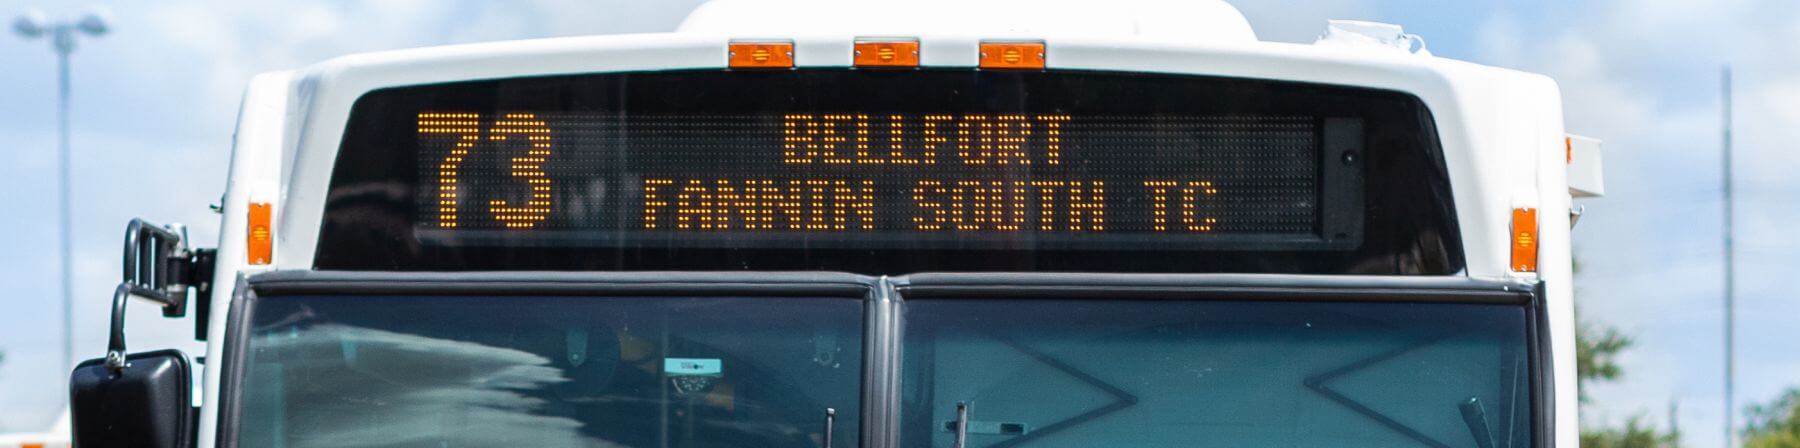 73 Bellfort bus